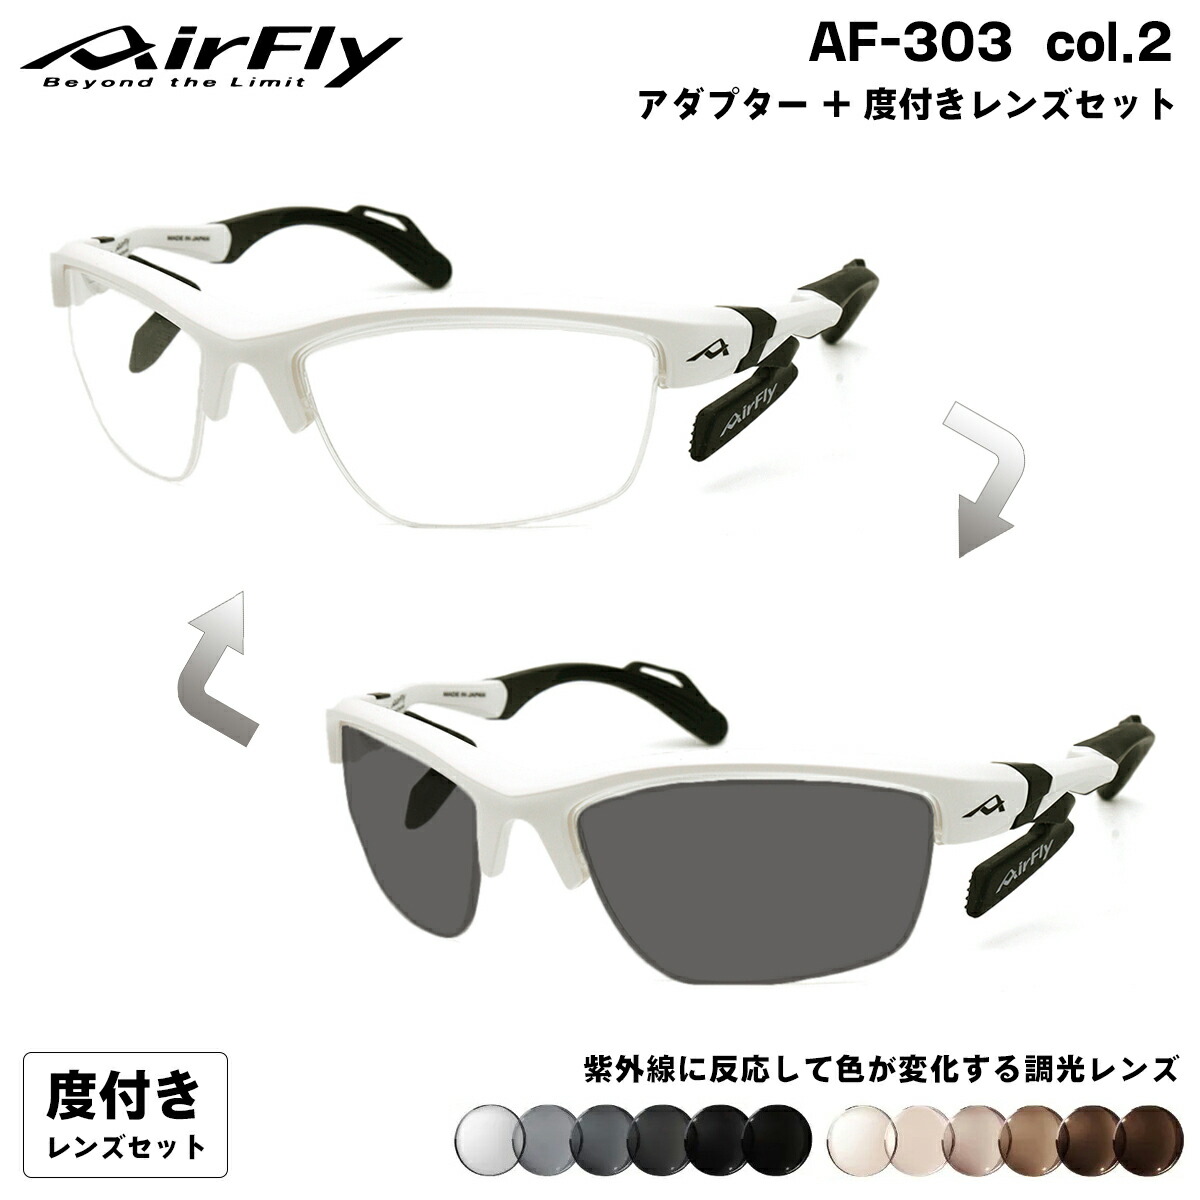 米ロ外相会談 エアフライ 調光 度付きサングラス AF-303 col.2 AirFly